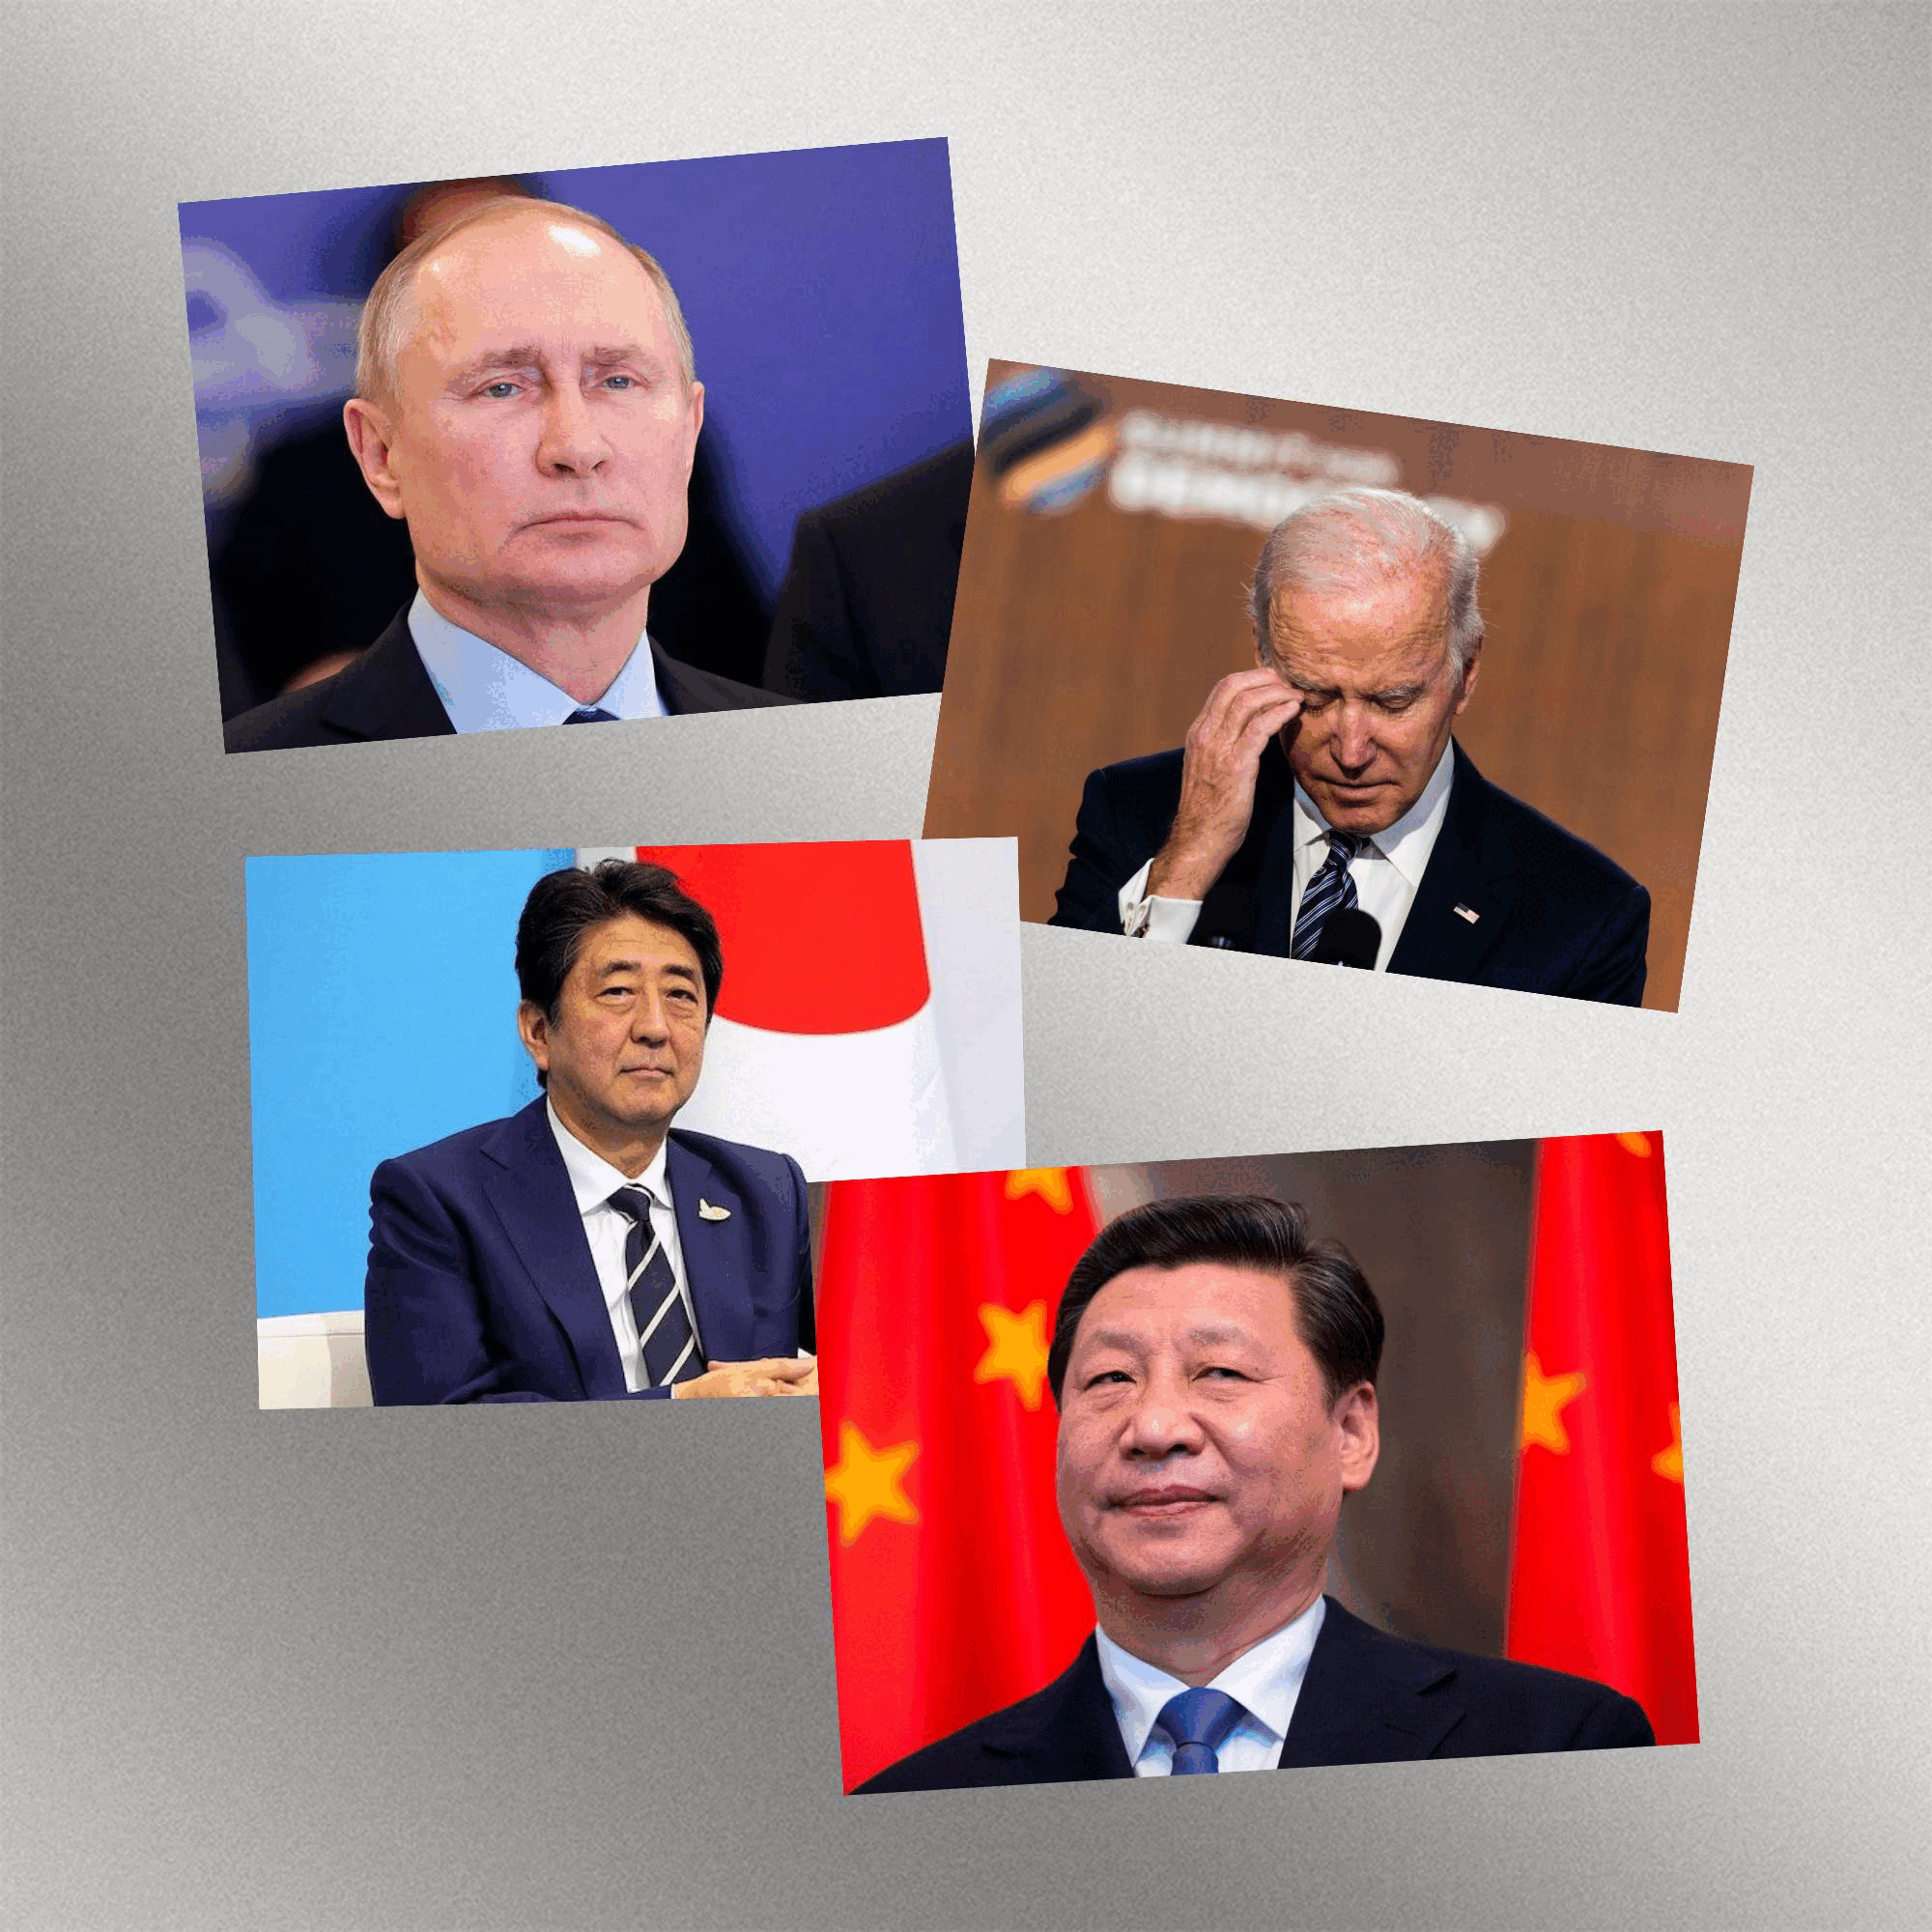 روسيا واليابان والصين وأمريكا لعبة الشطرنج بين الأربع الكبار